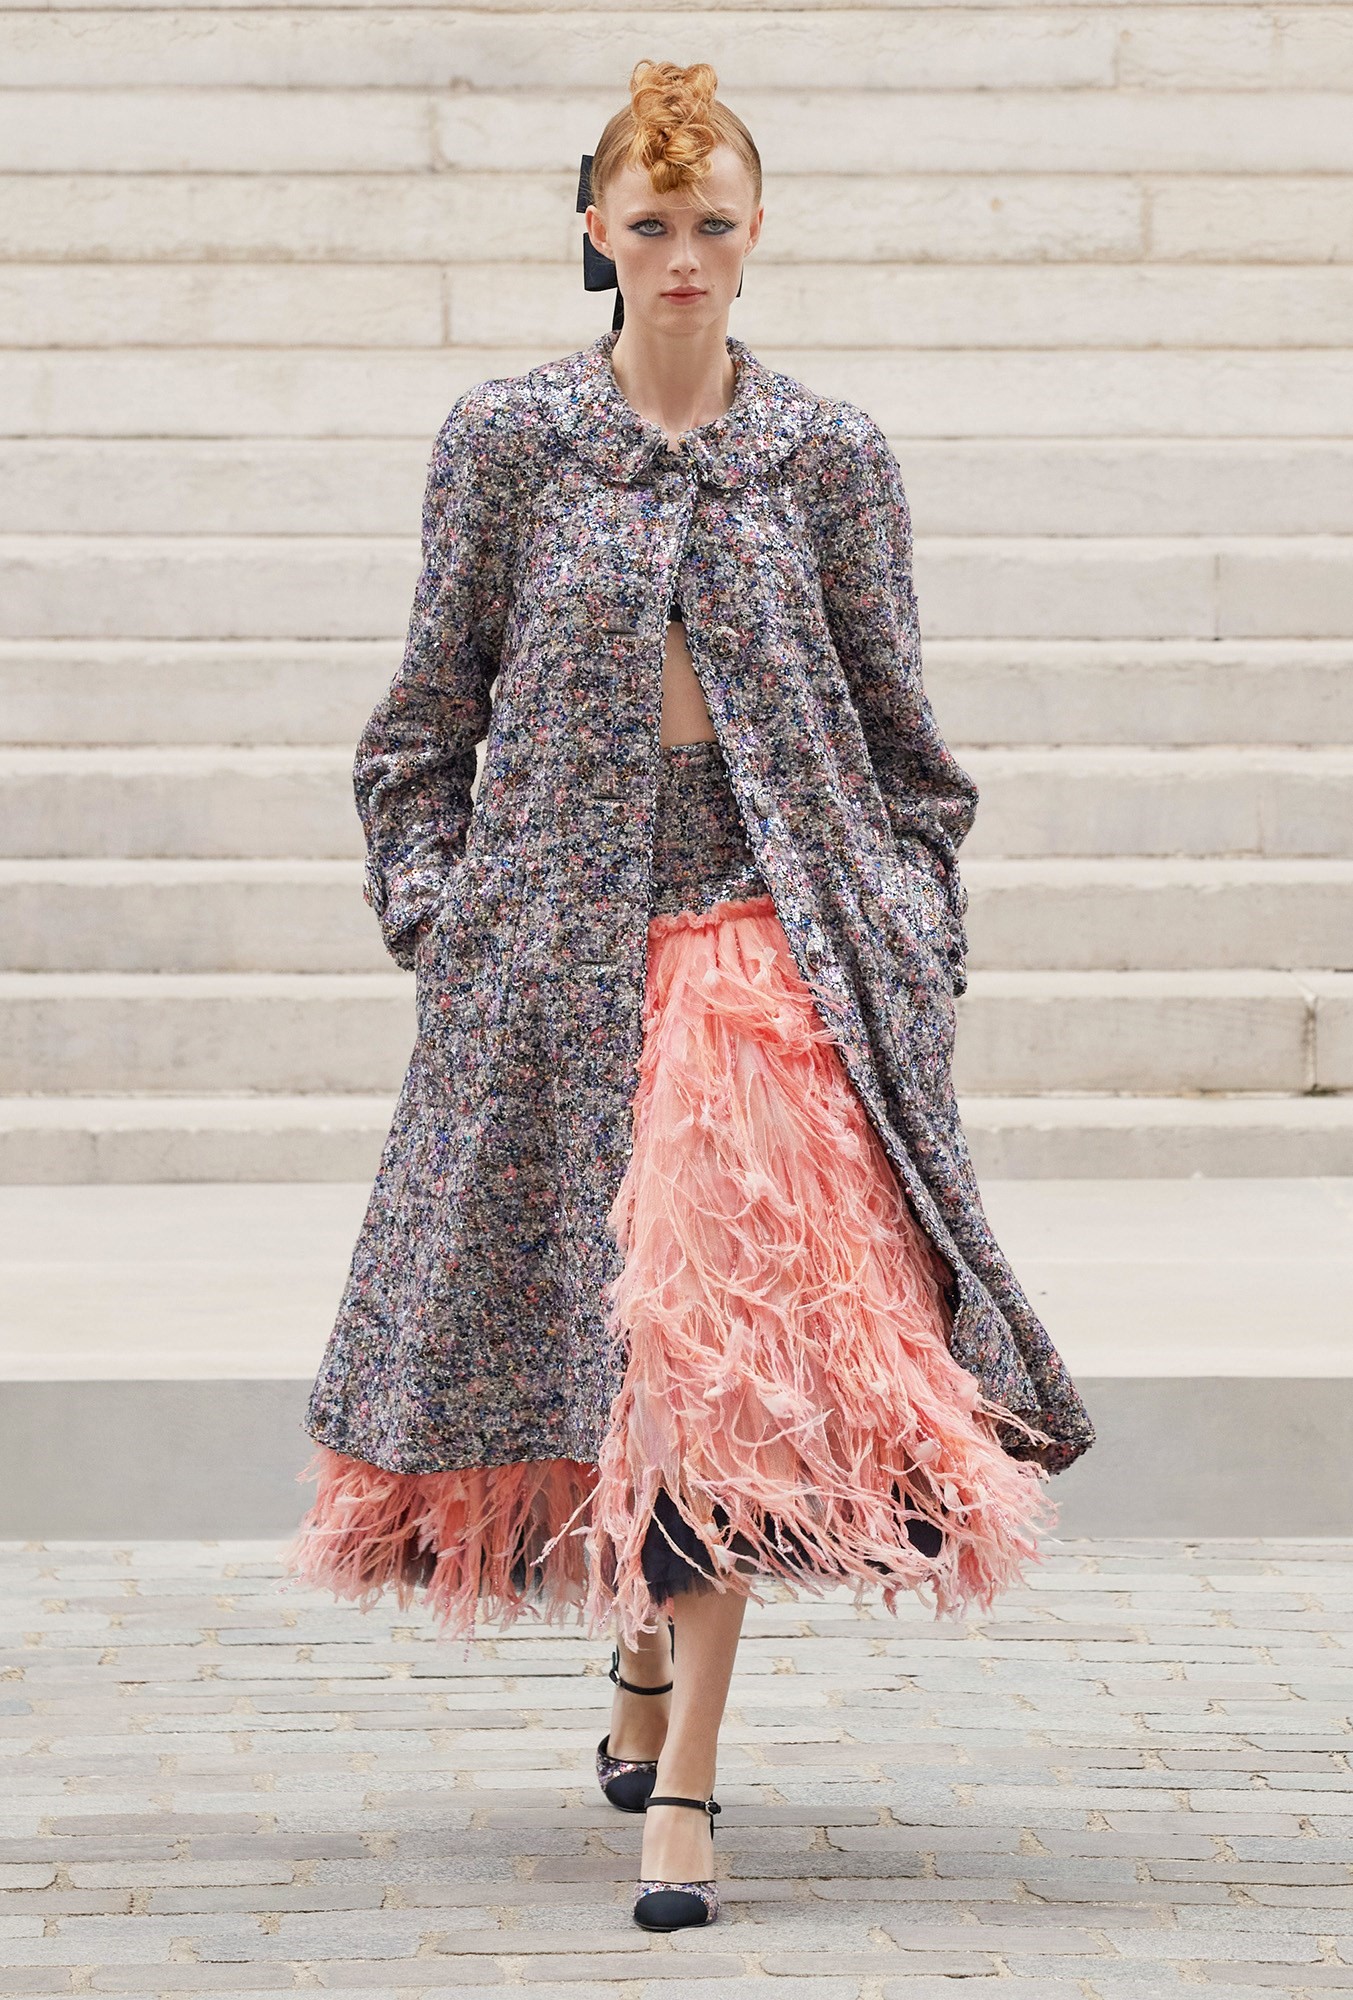 Chanel Autumn/Winter 2021 Haute Couture